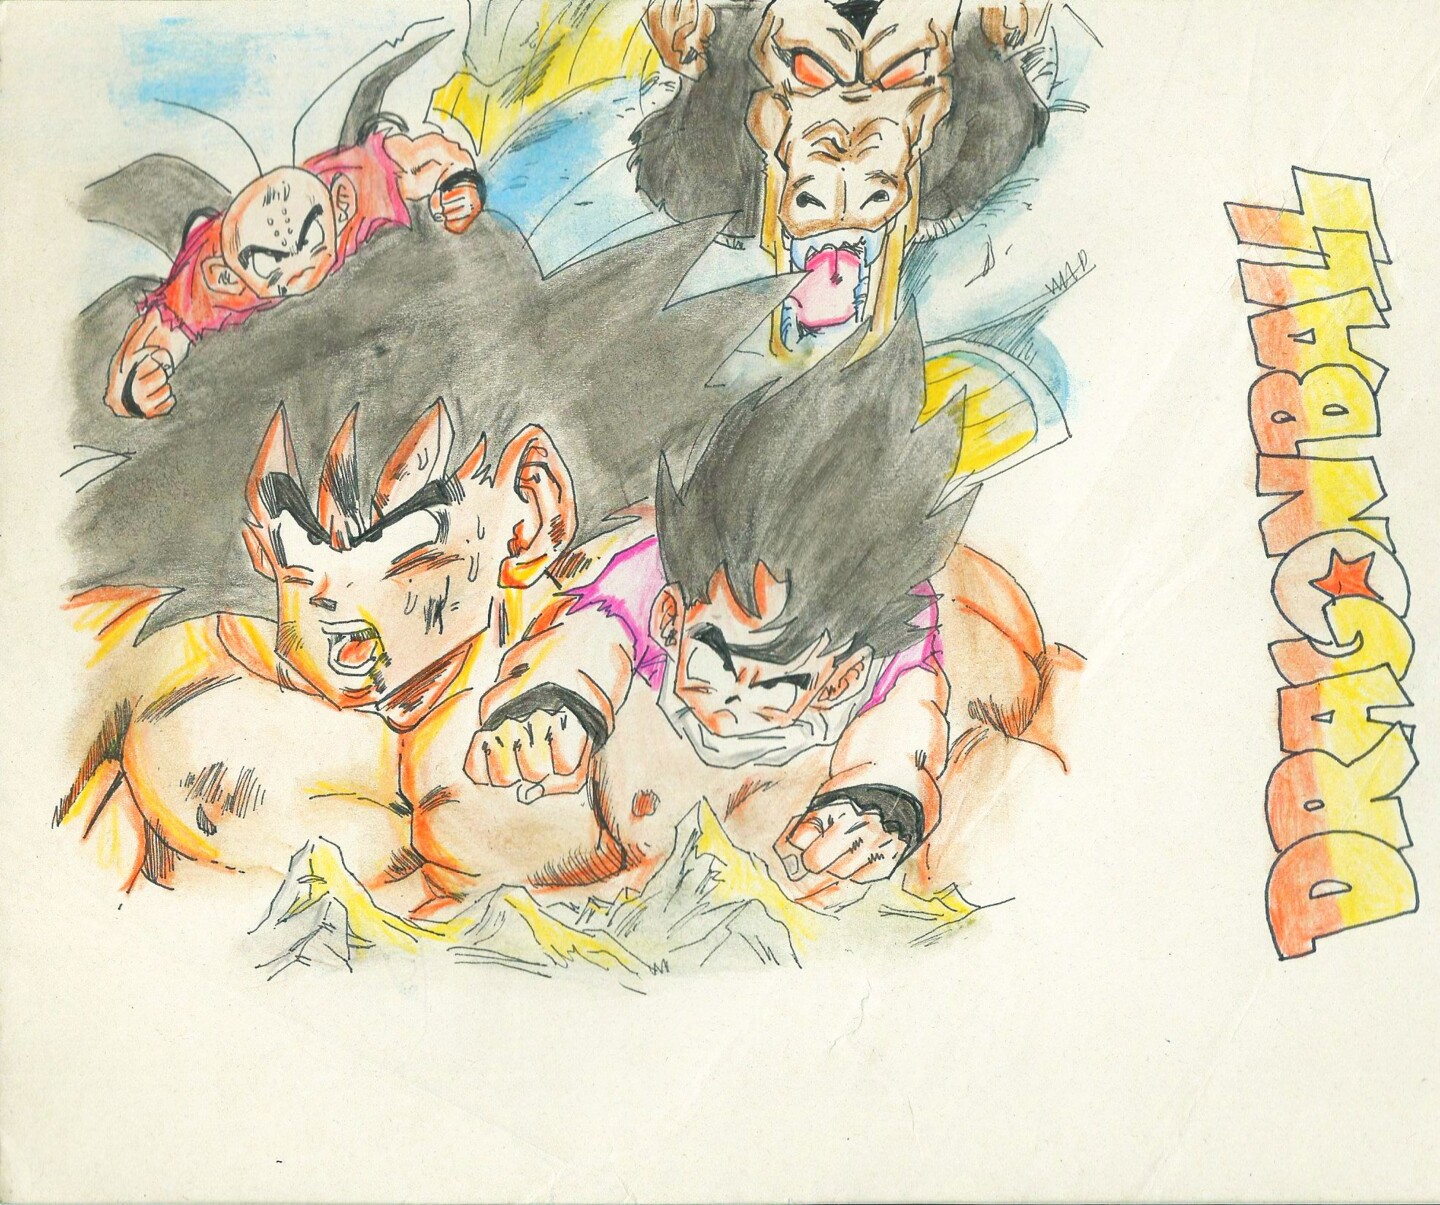 Dragon Ball Z Tribute 1980-90 Goku Hogan, Desenho por Eduardo Bustos  Segovia